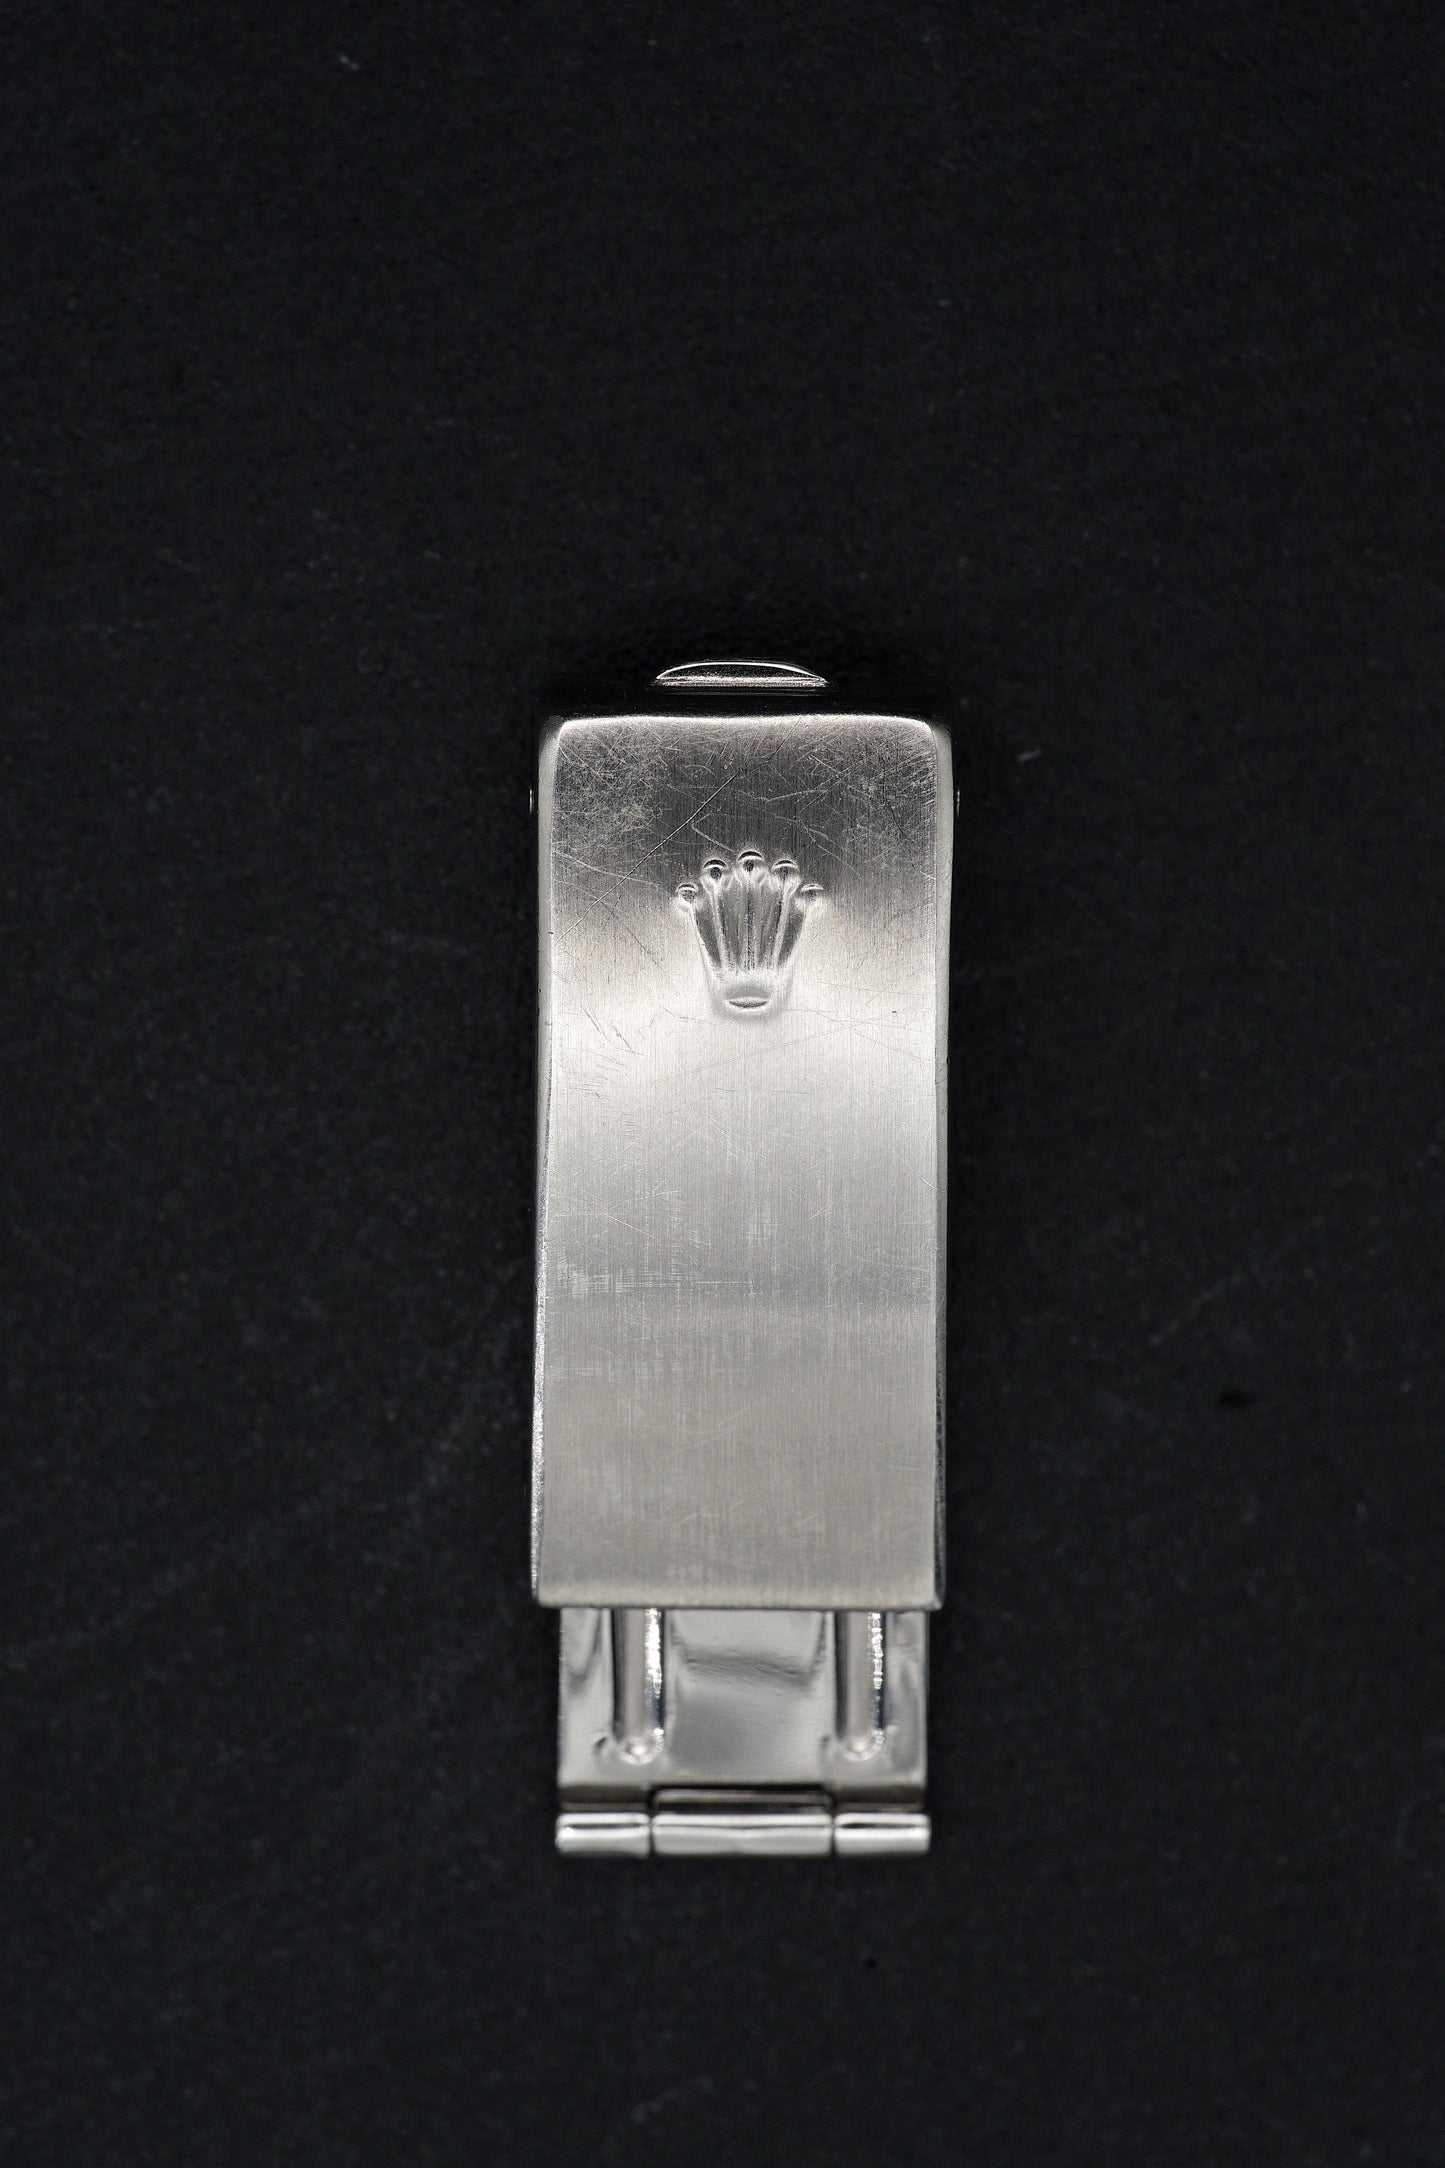 Rolex "Lady Datejust" Schließe aus Stahl – Modell 62523.D für Stahl-Gold-Armbänder